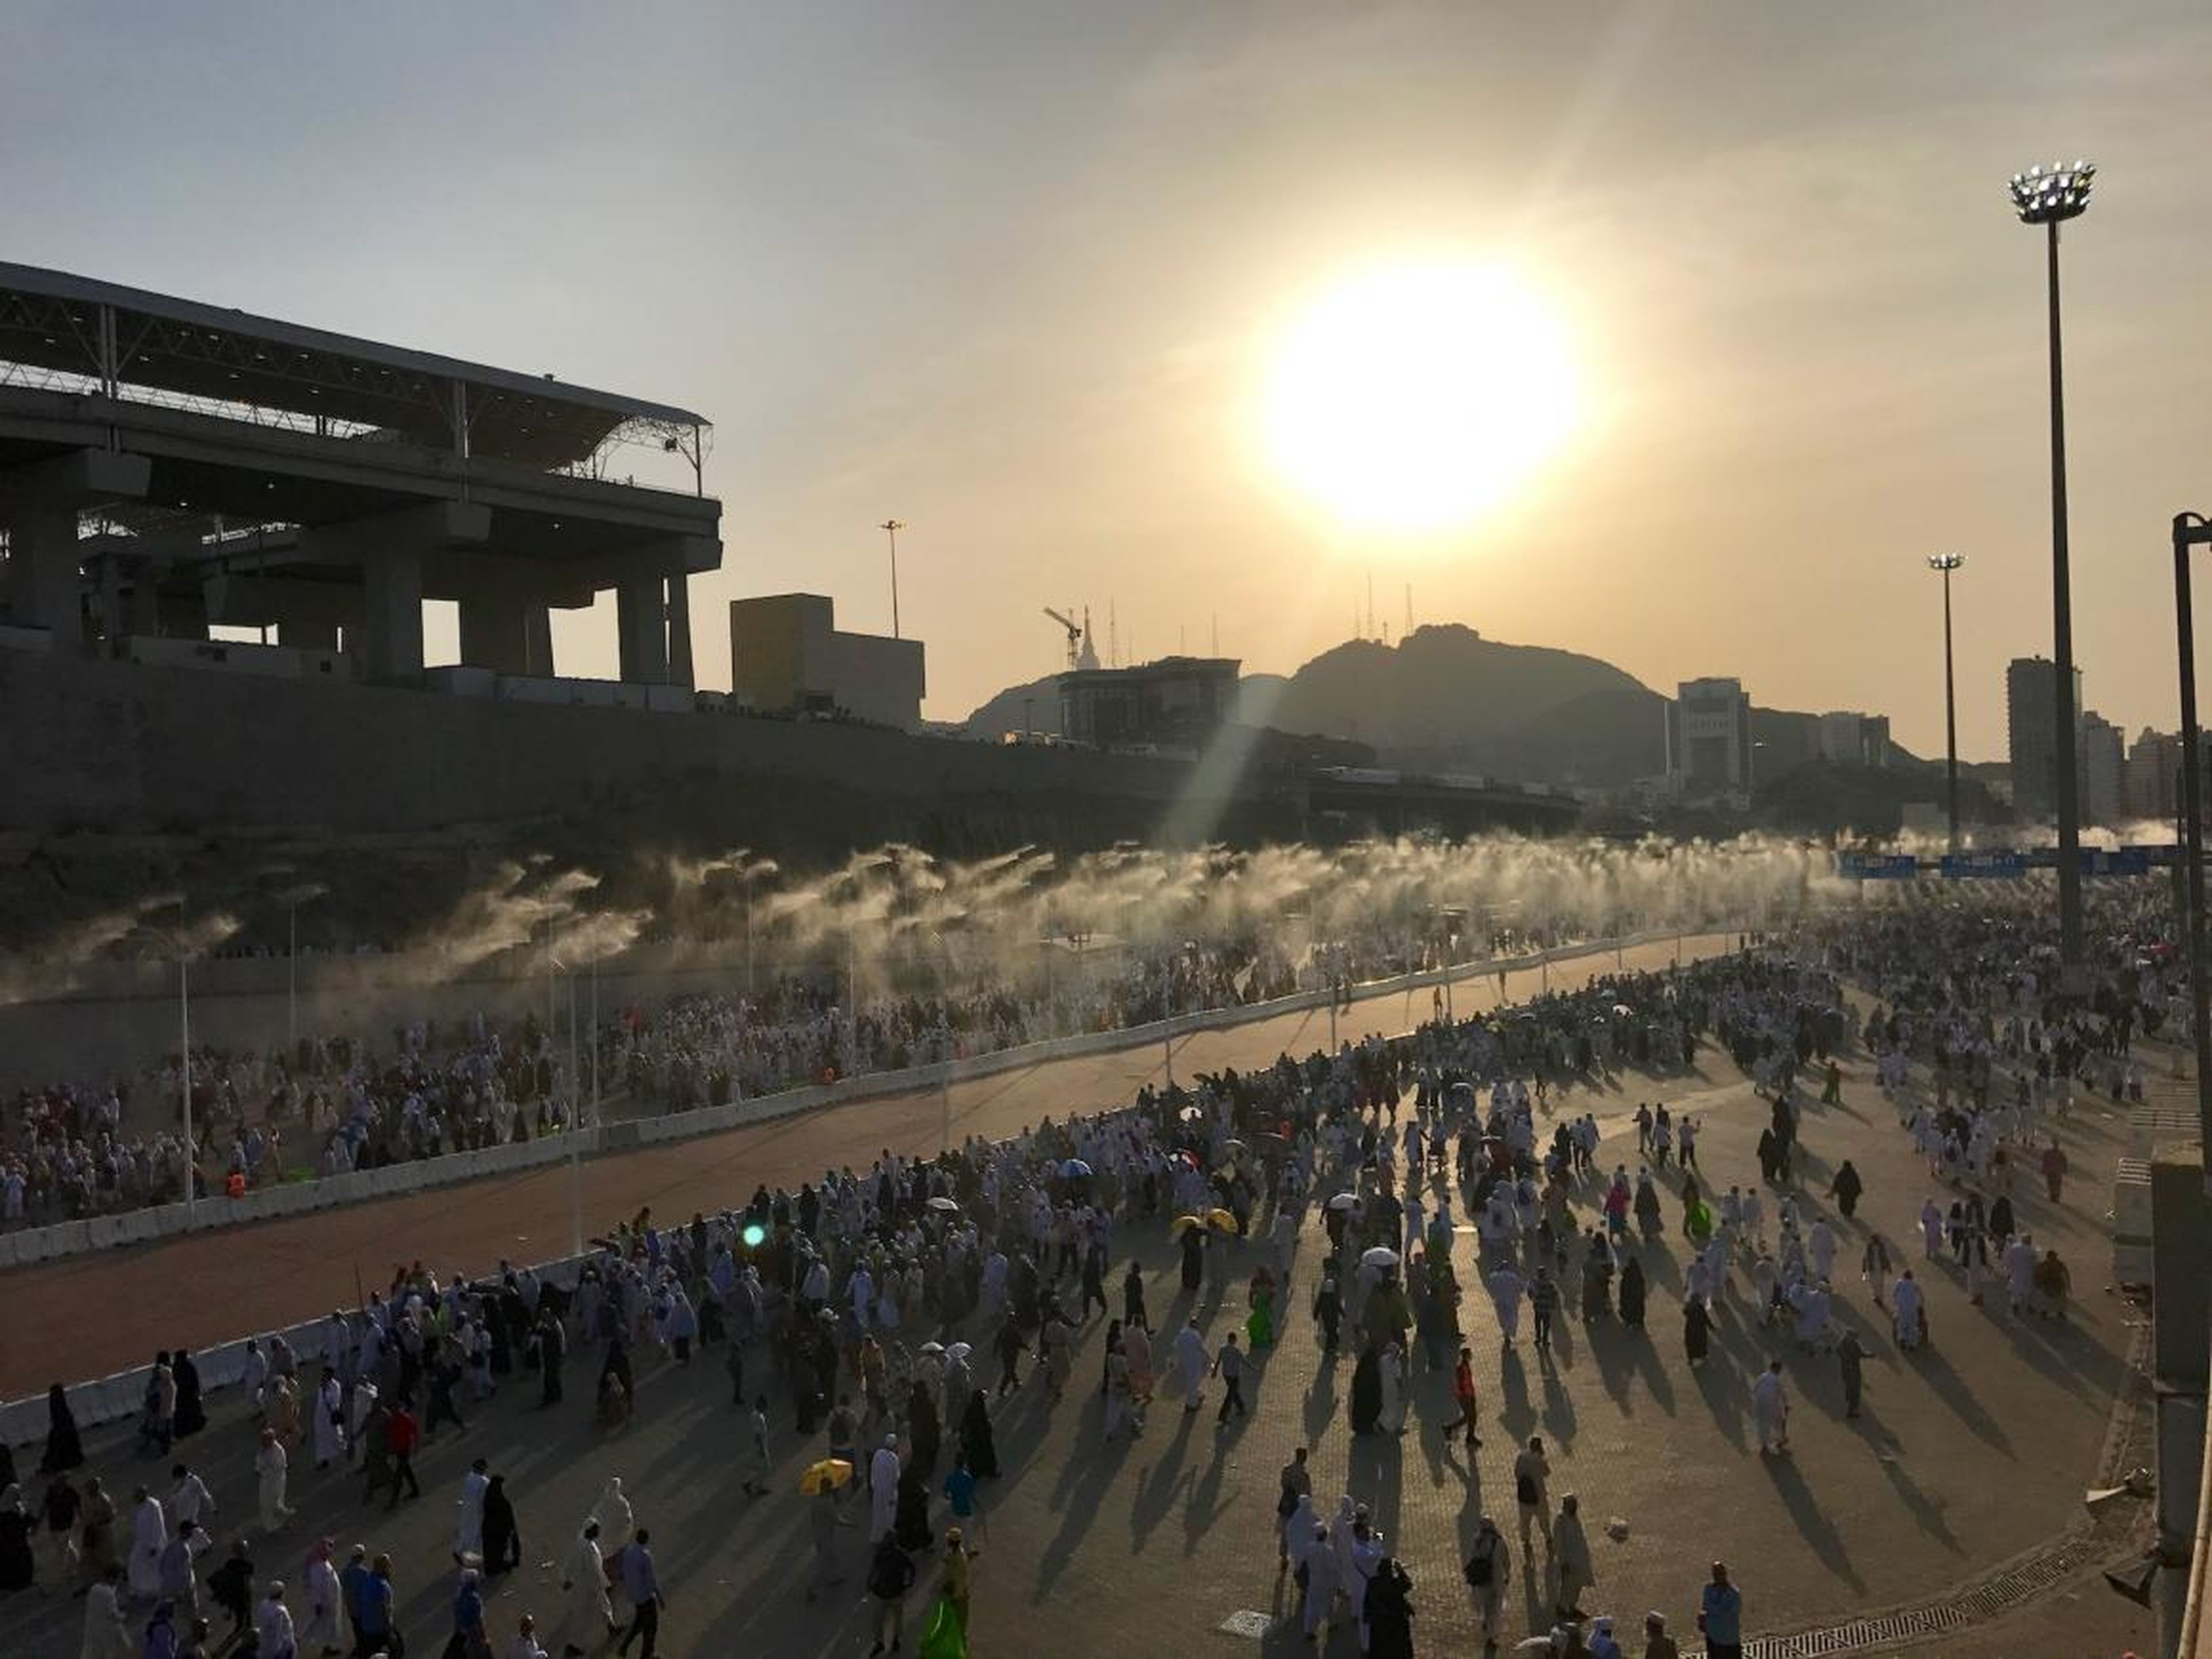 Un sistema de enfriamiento rociando agua ayuda a combatir el calor en La Meca.